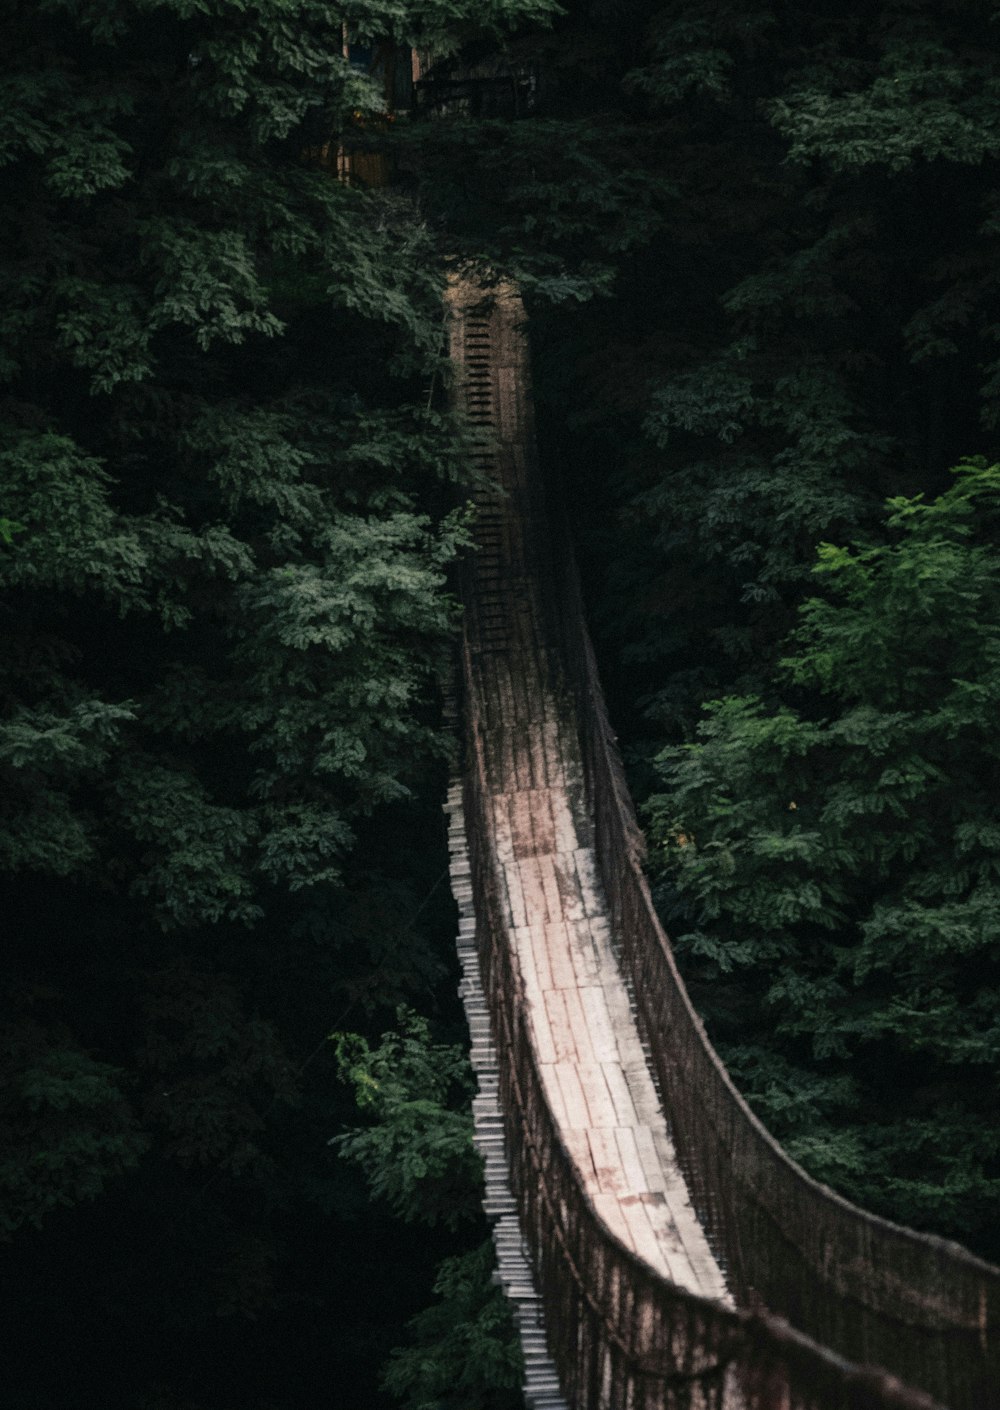 ponte de madeira marrom na floresta